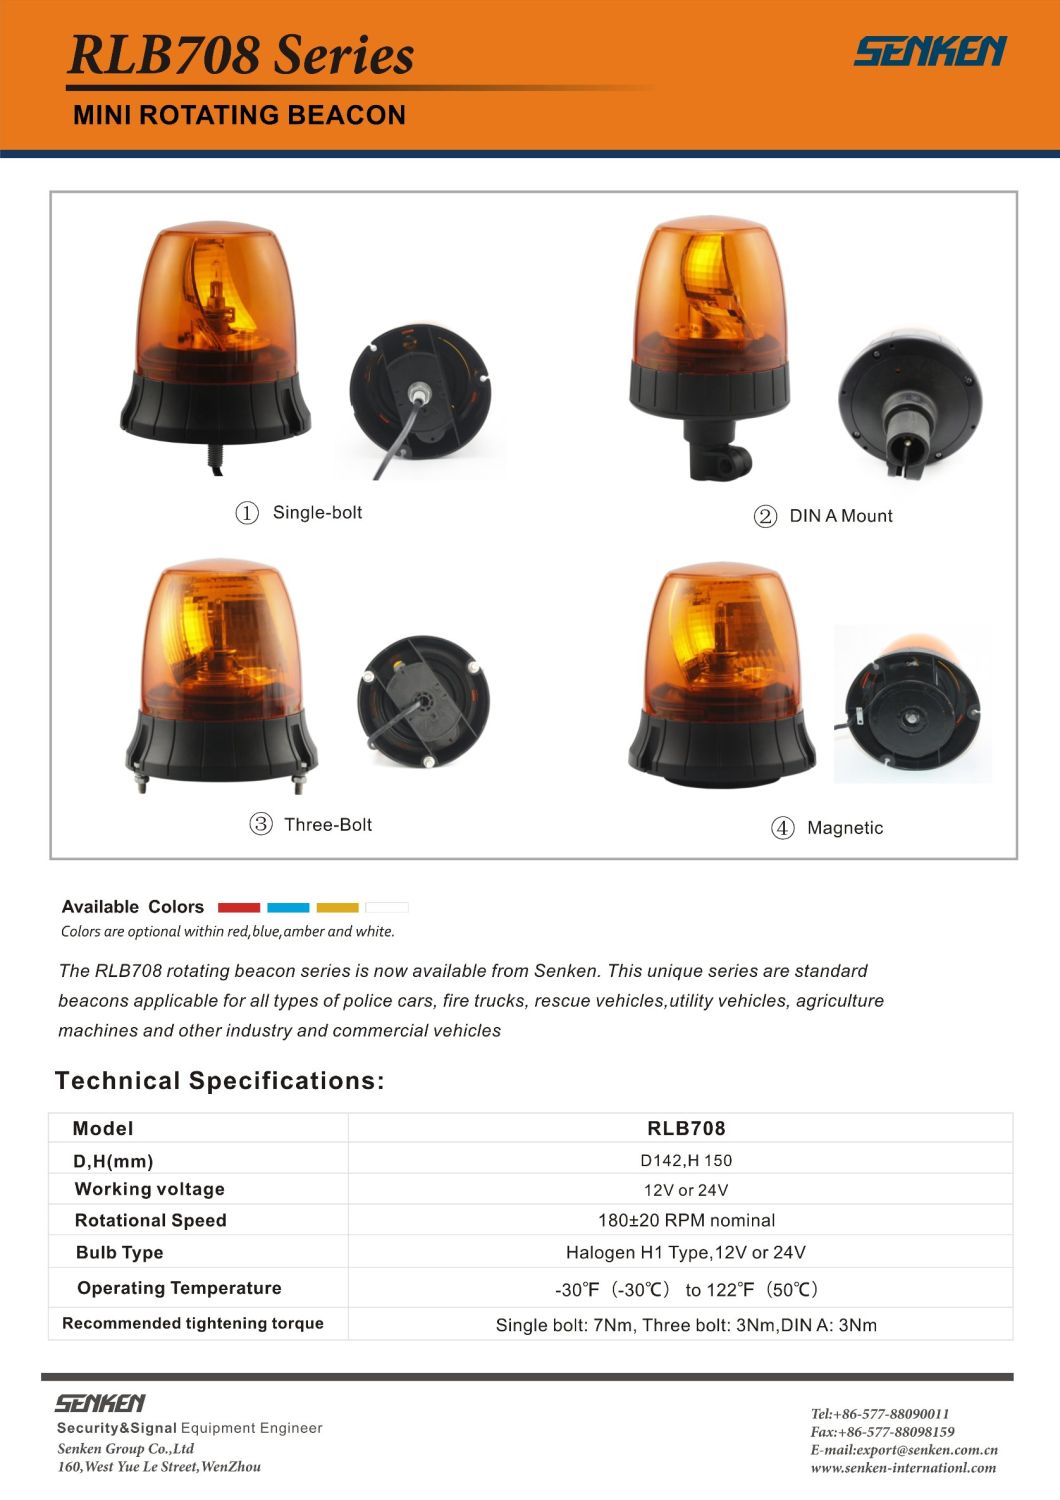 Senken Rlb708 Halogen Rotate Beacon Warning Light for Police or Truck